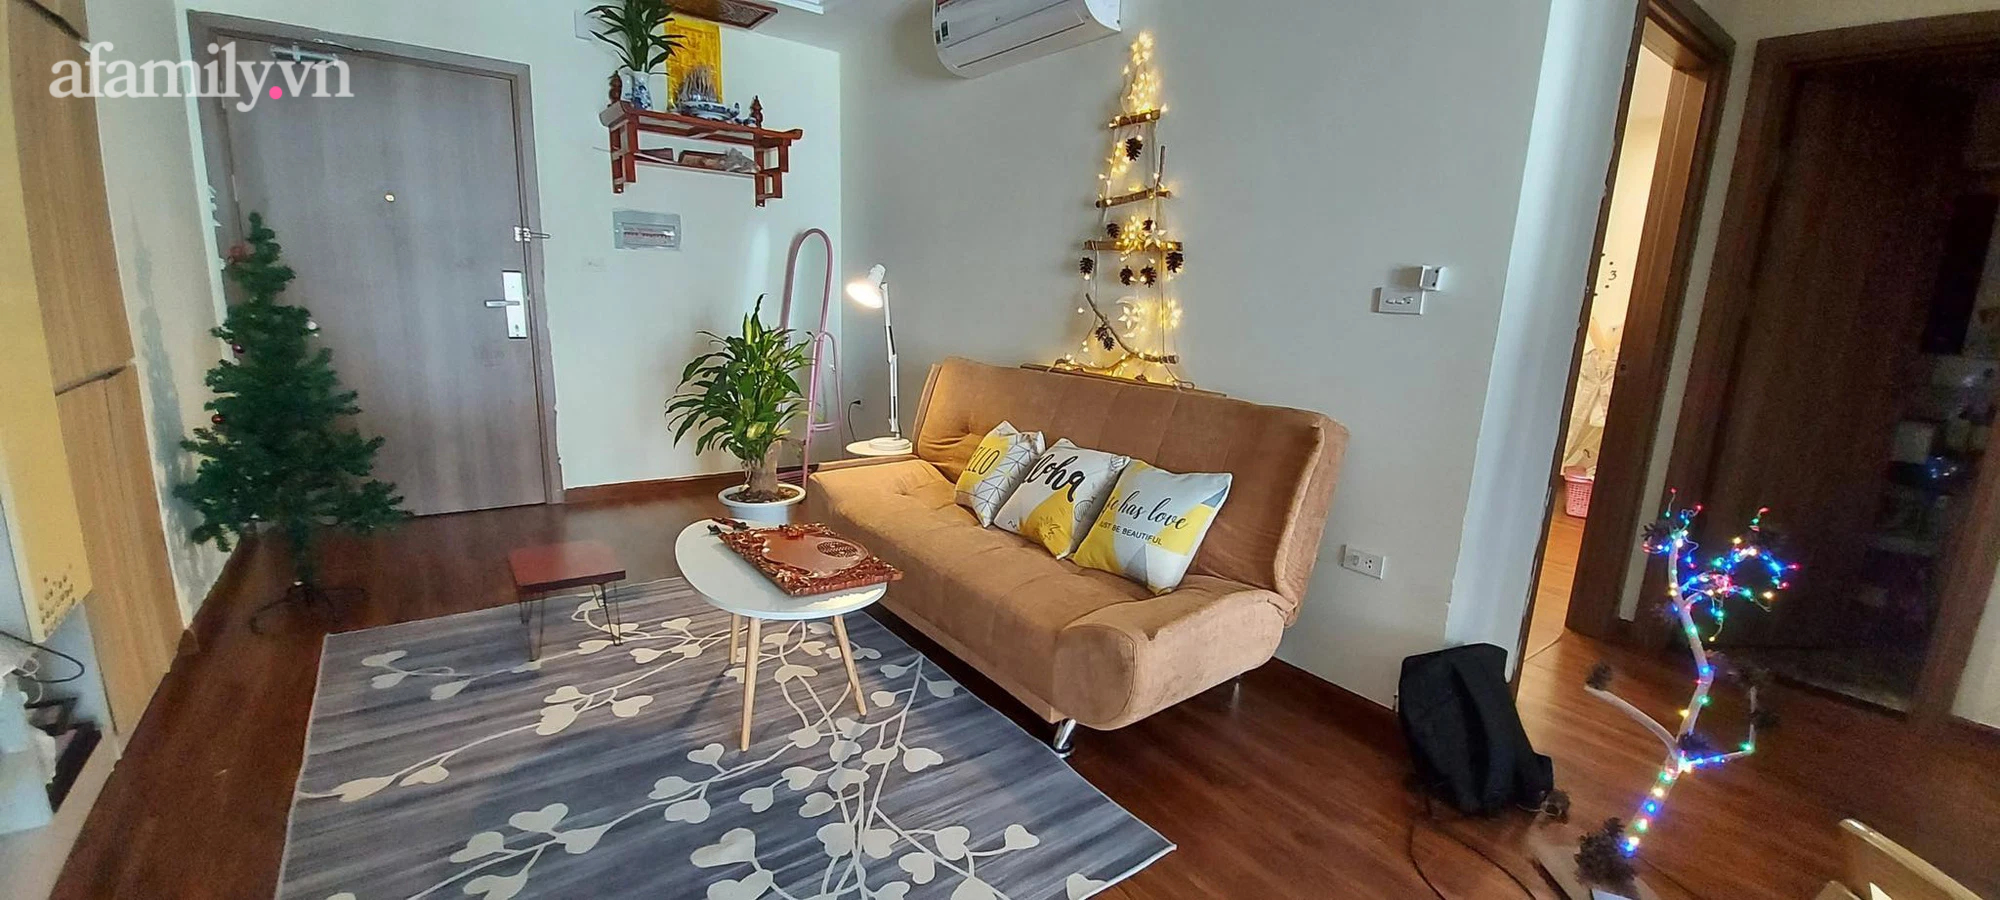 Trang trí căn hộ đón Noel với giá 350 ngàn đồng của cô giáo Hà Nội - Ảnh 5.